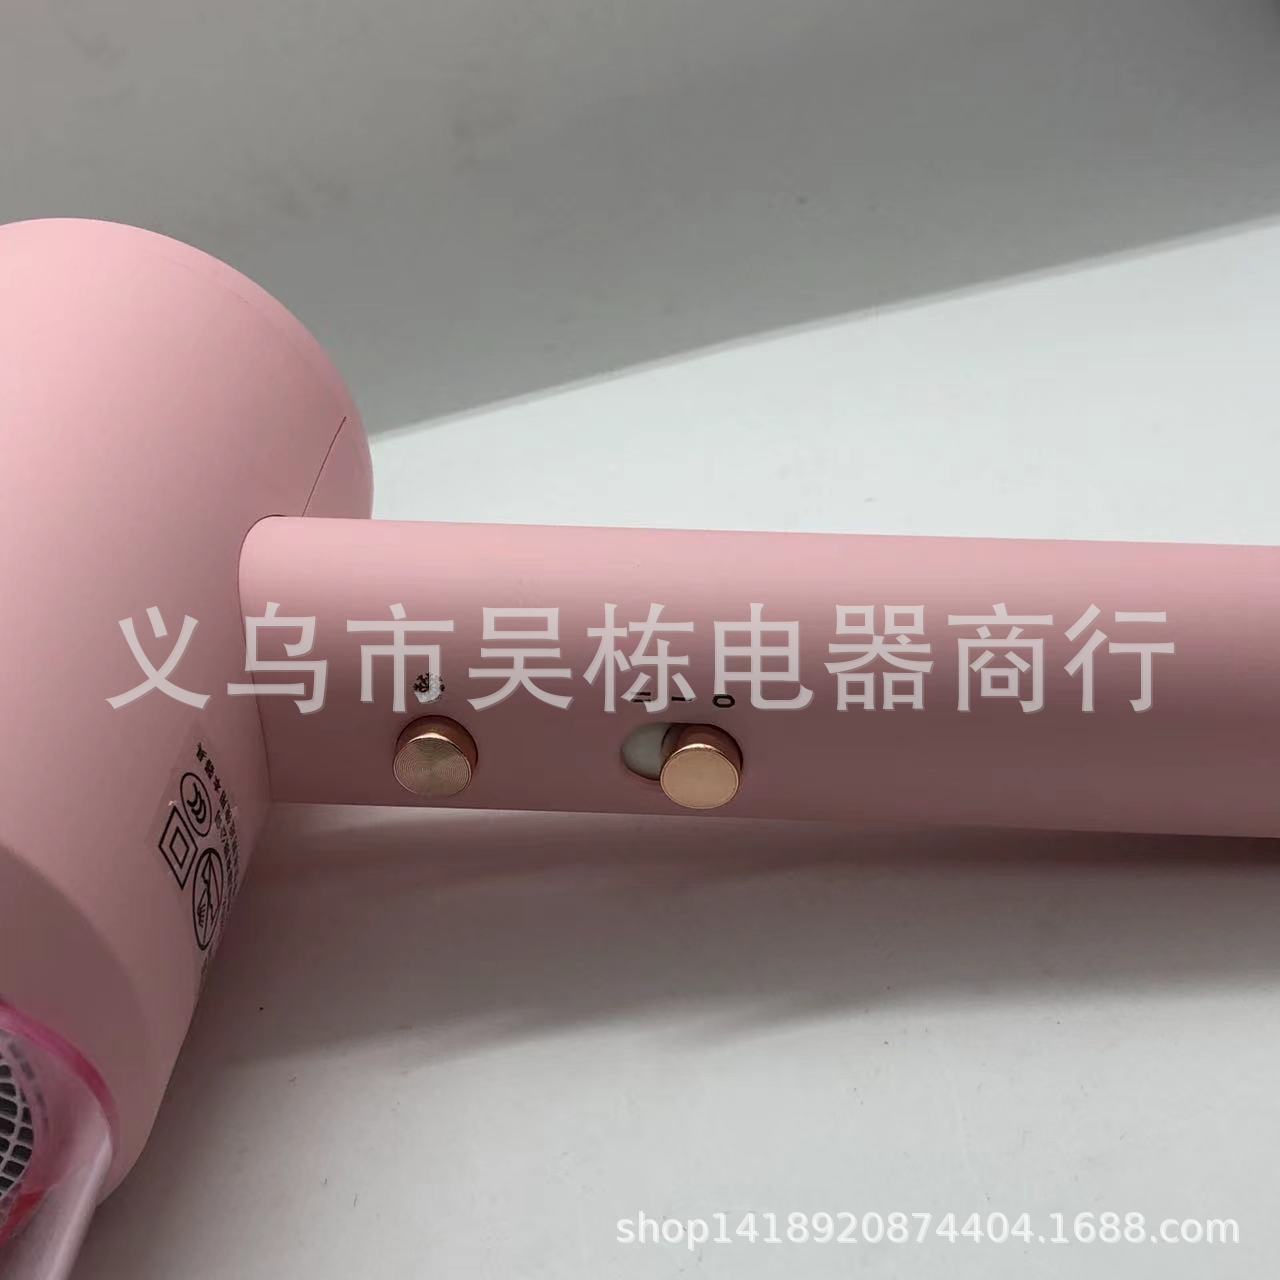 Bright 7150 Hair Dryer Hair Dryer 1500W White Pink